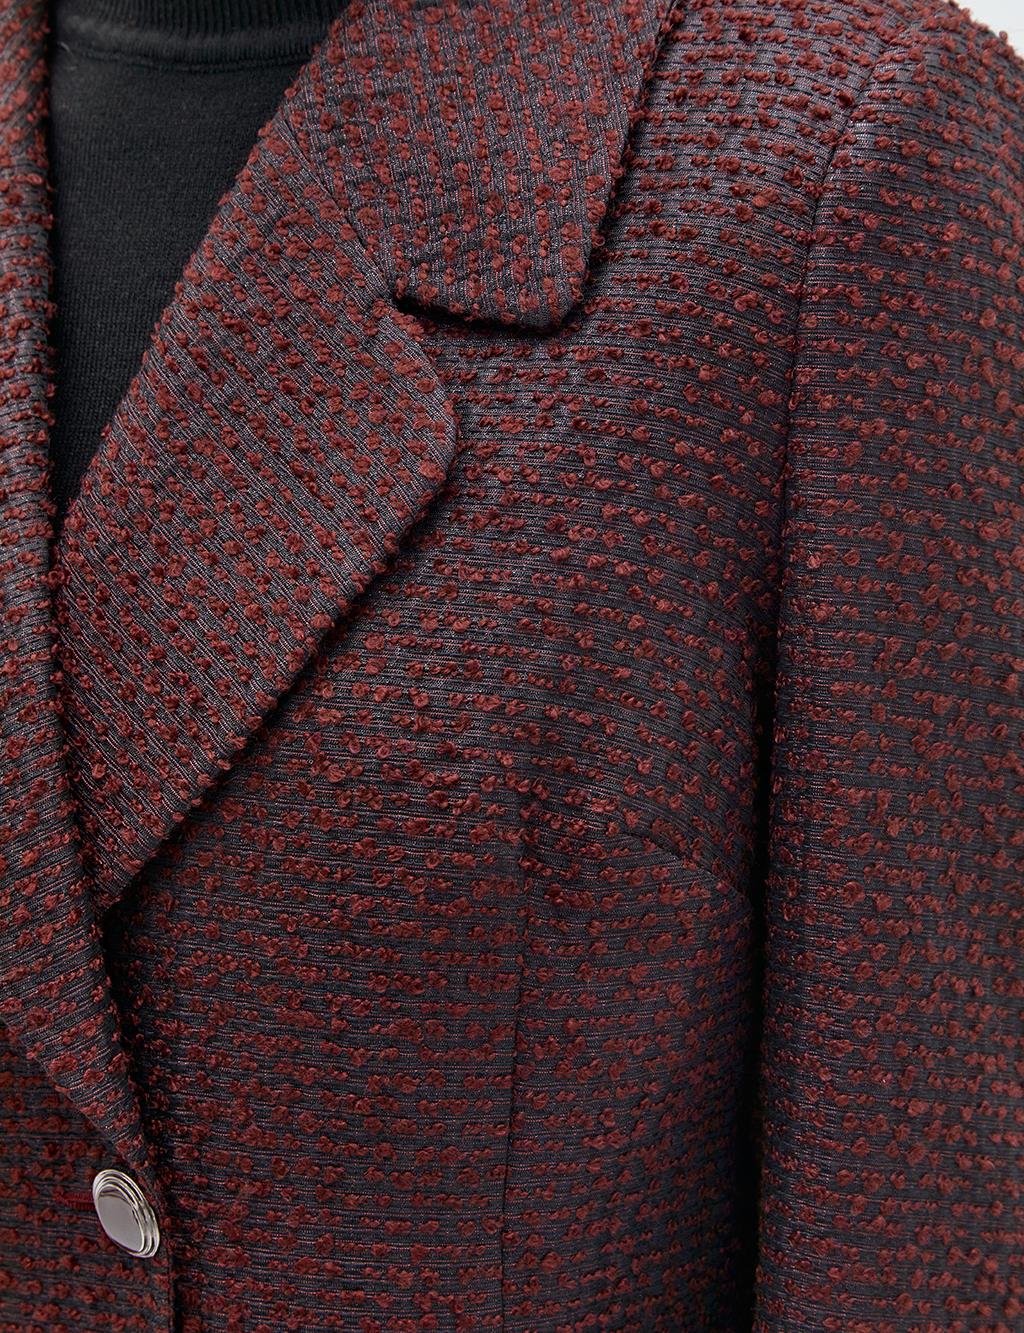 Tweed Blazer Jacket Bronze Brown